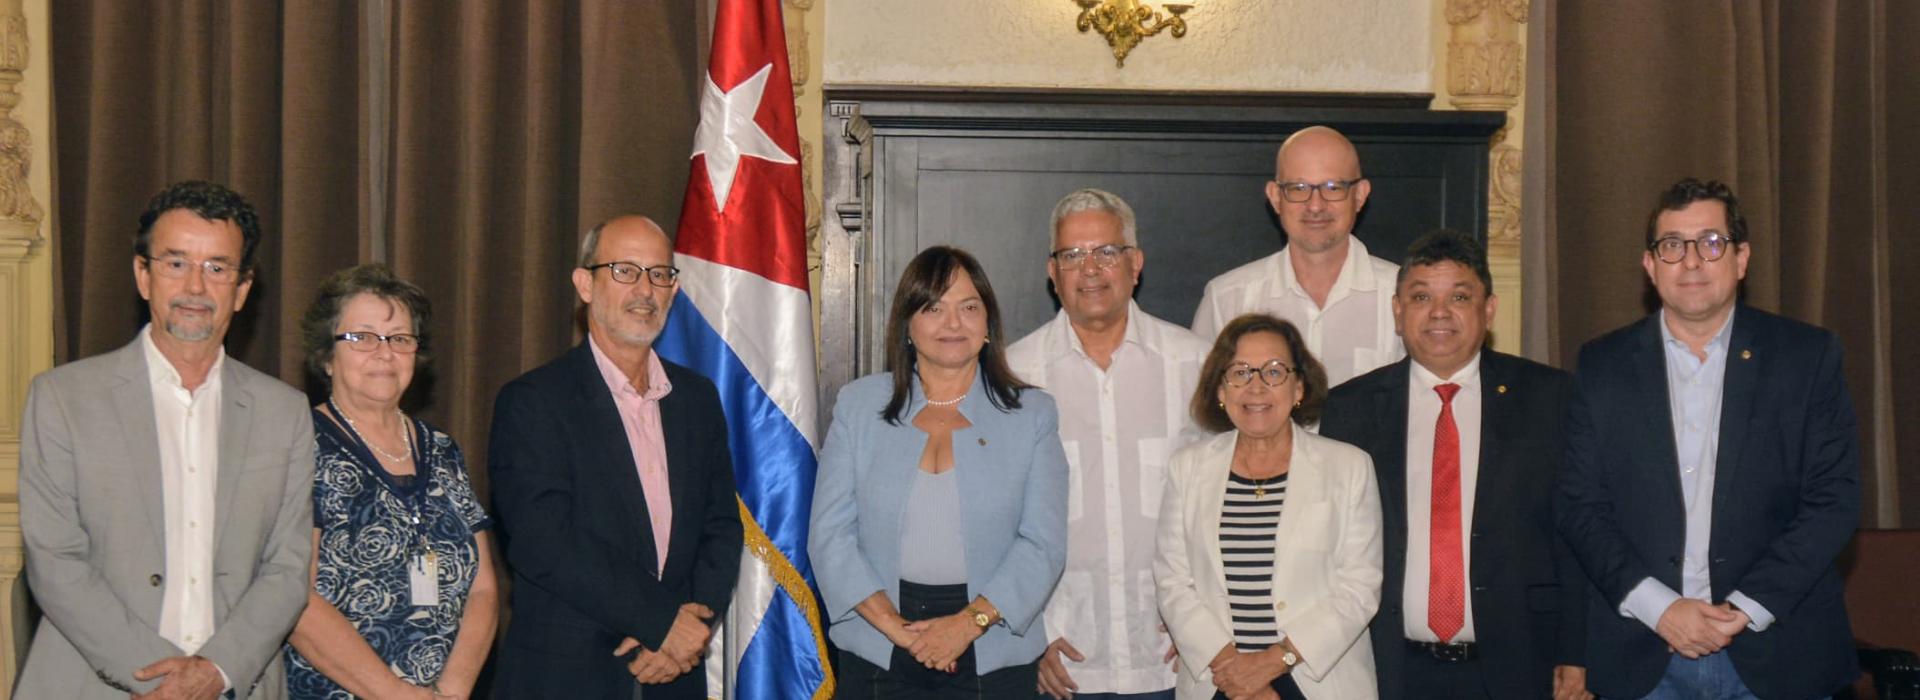 Gervásio participa de missão internacional representando a Câmara dos Deputados, em Havana